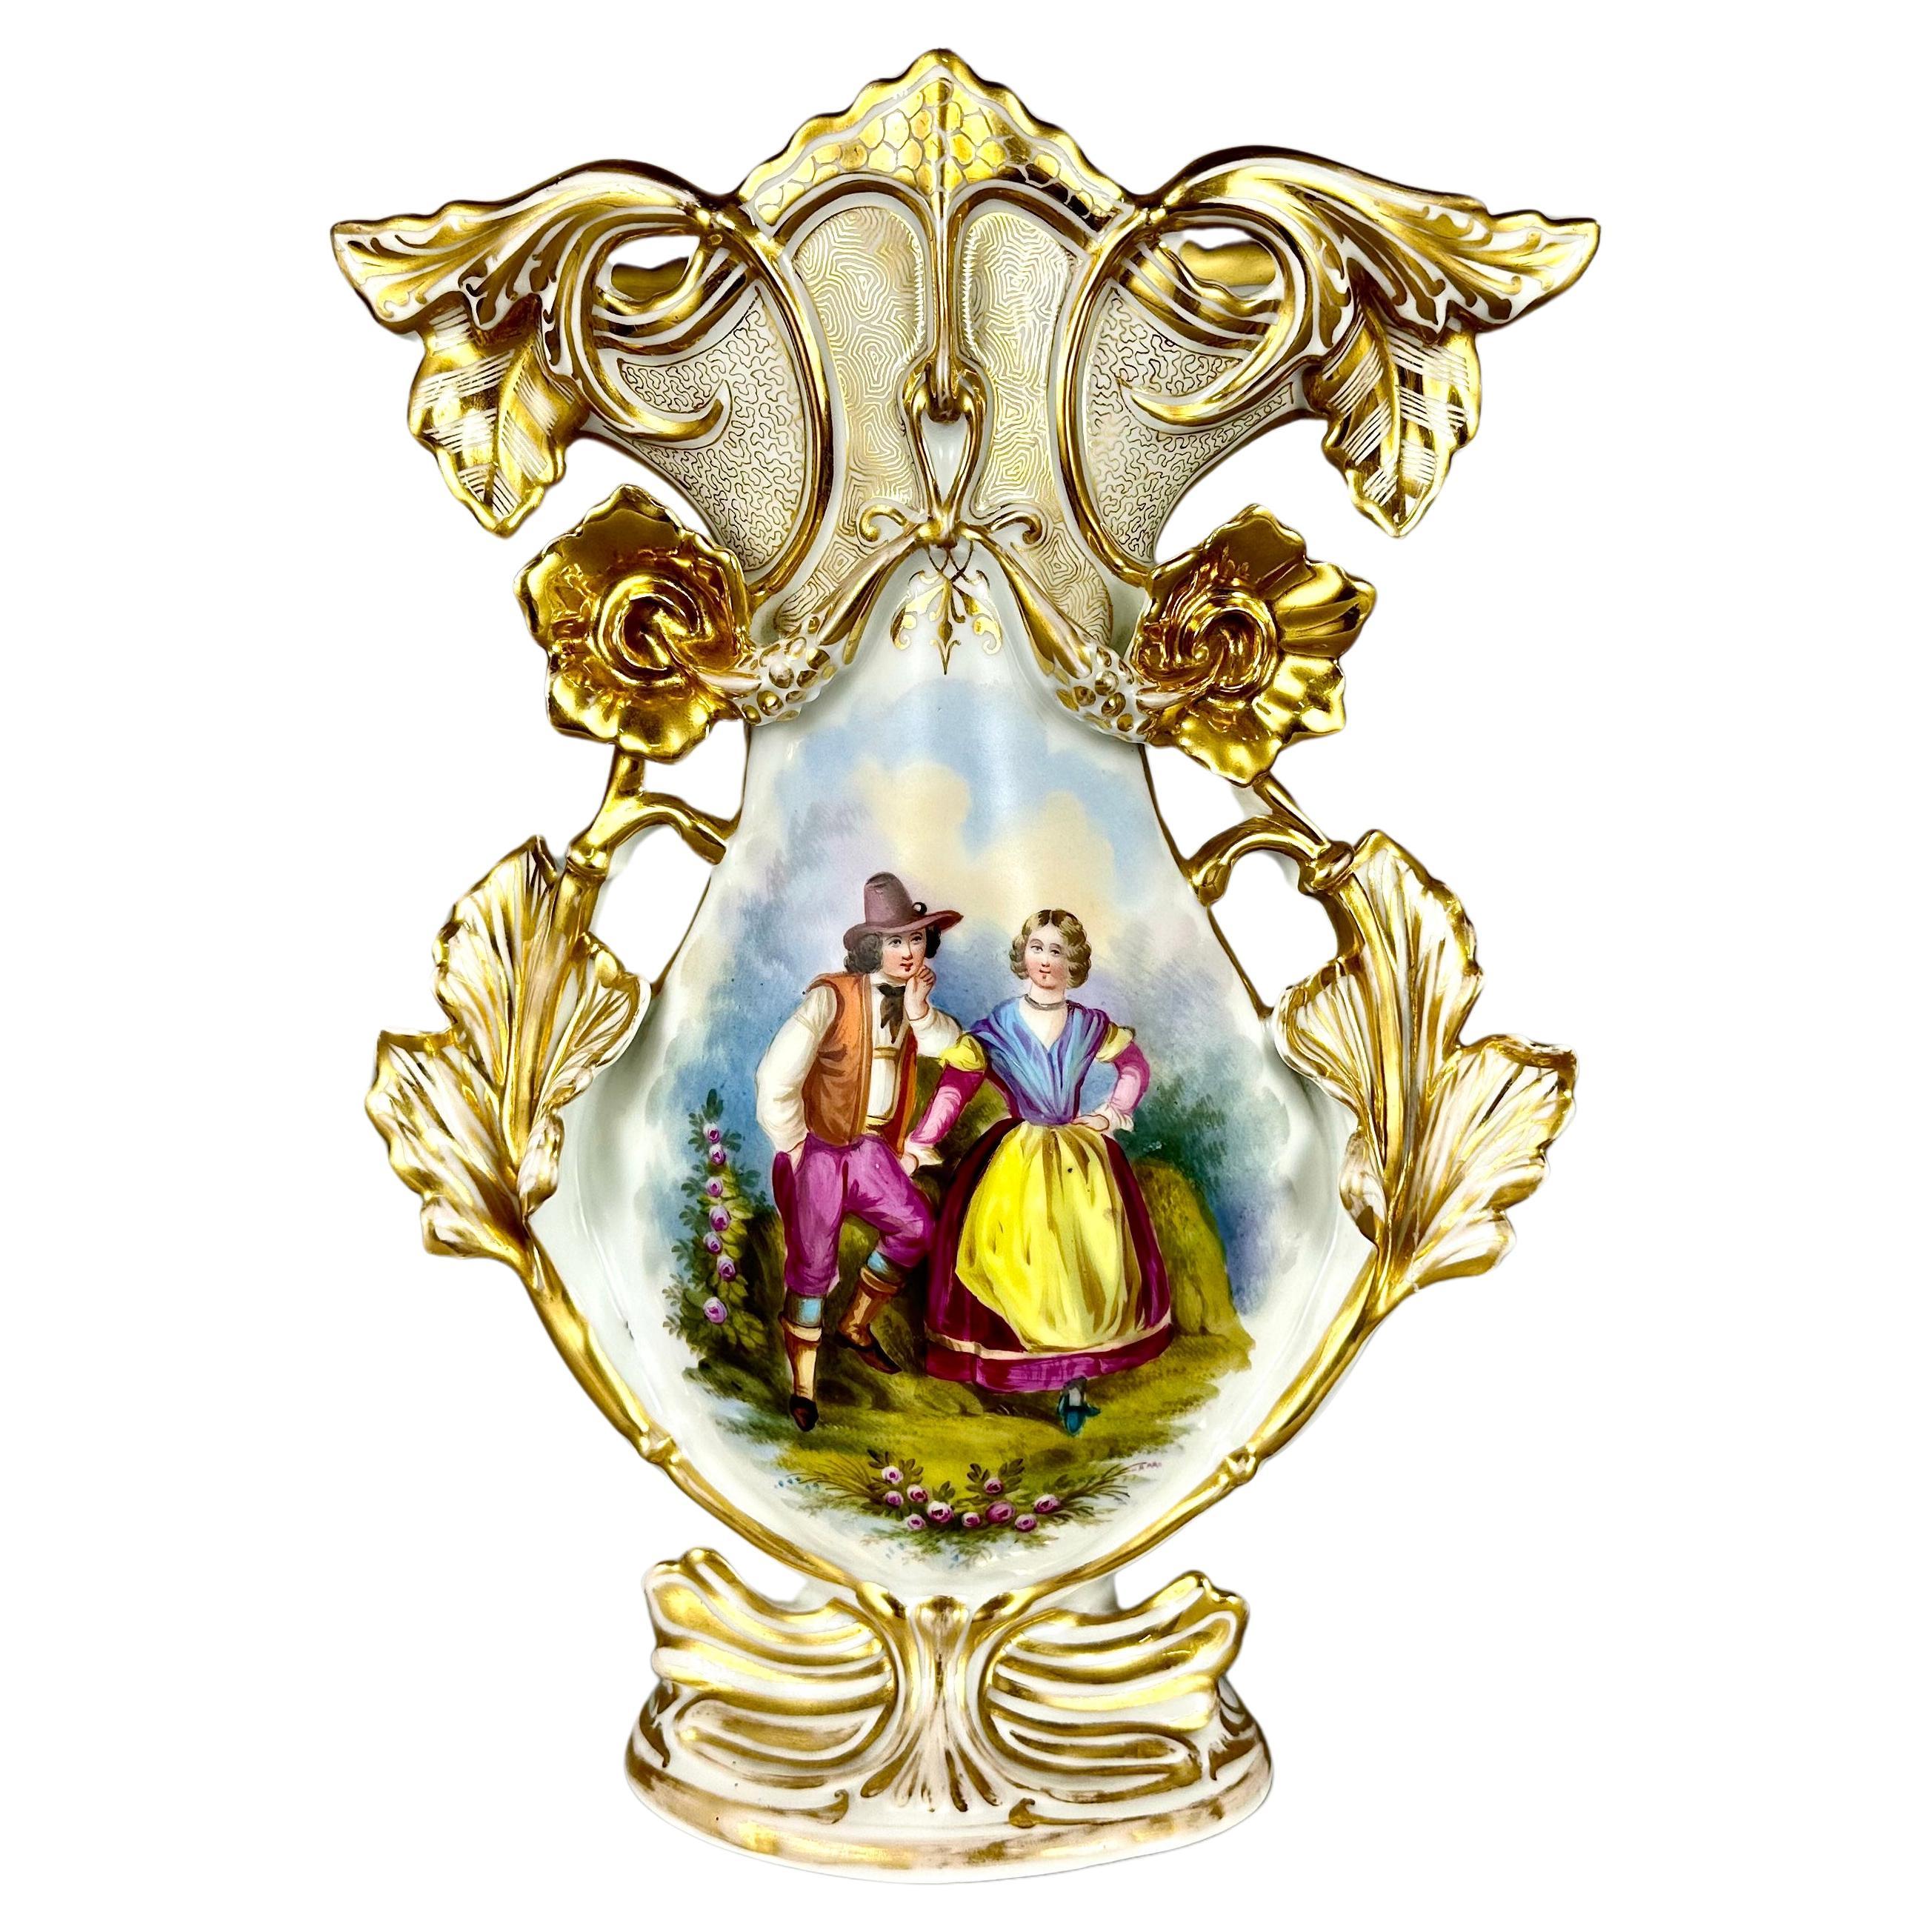 Vase Antique Old Paris Hand Painted Parisian Romantic Scene France 19th Century